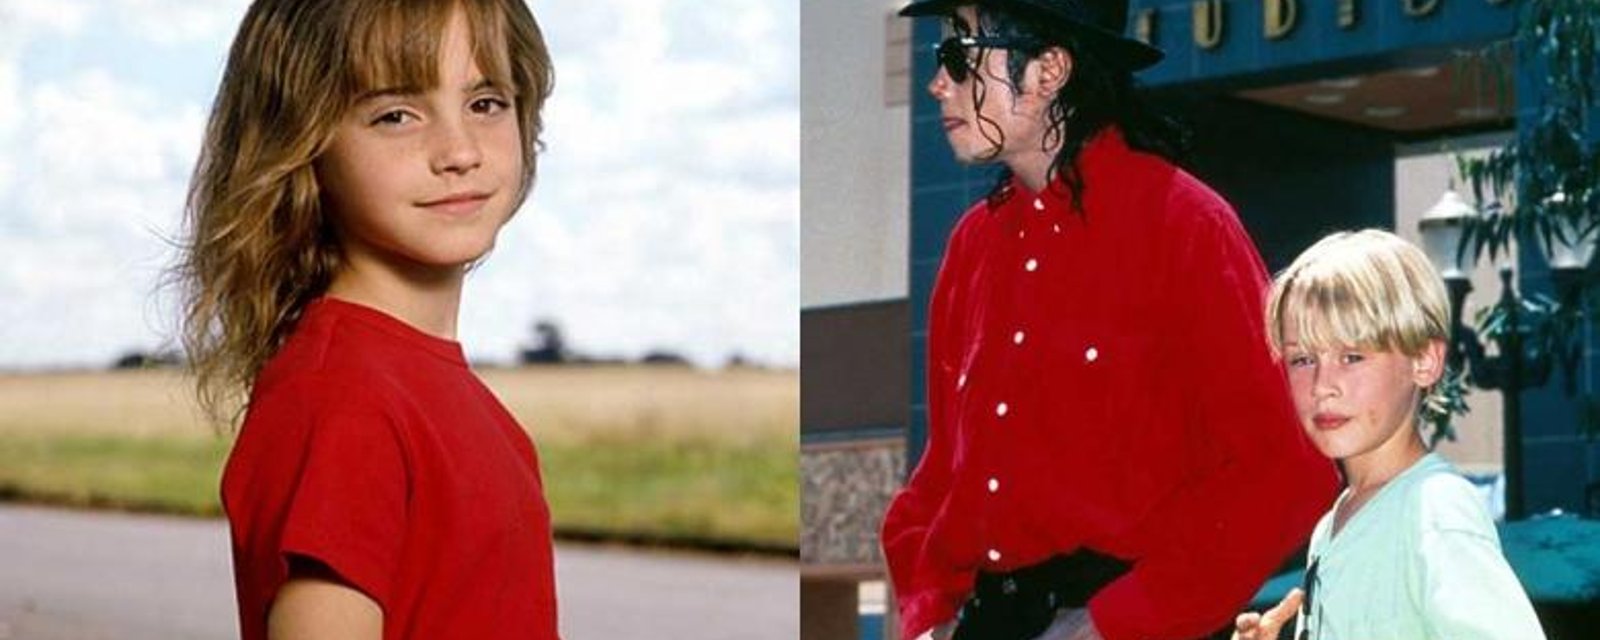 L'ancien médecin de Michael Jackson lance de terribles accusations contre lui!